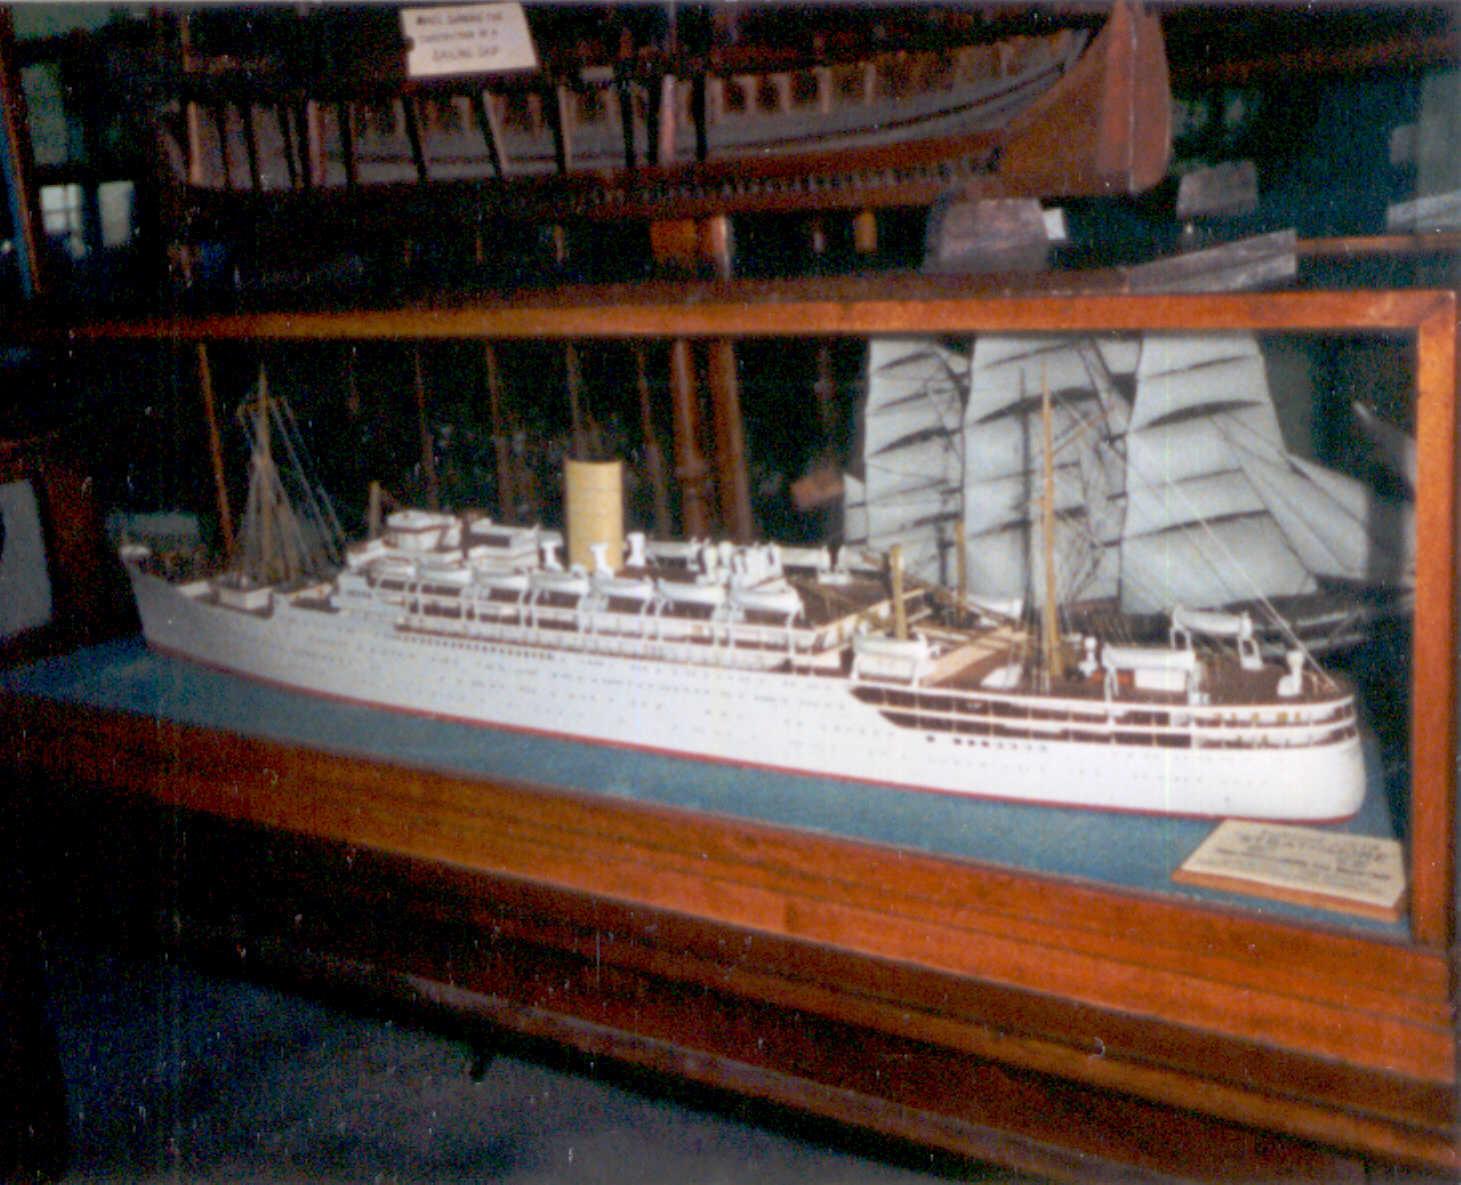 Model of passenger vessel